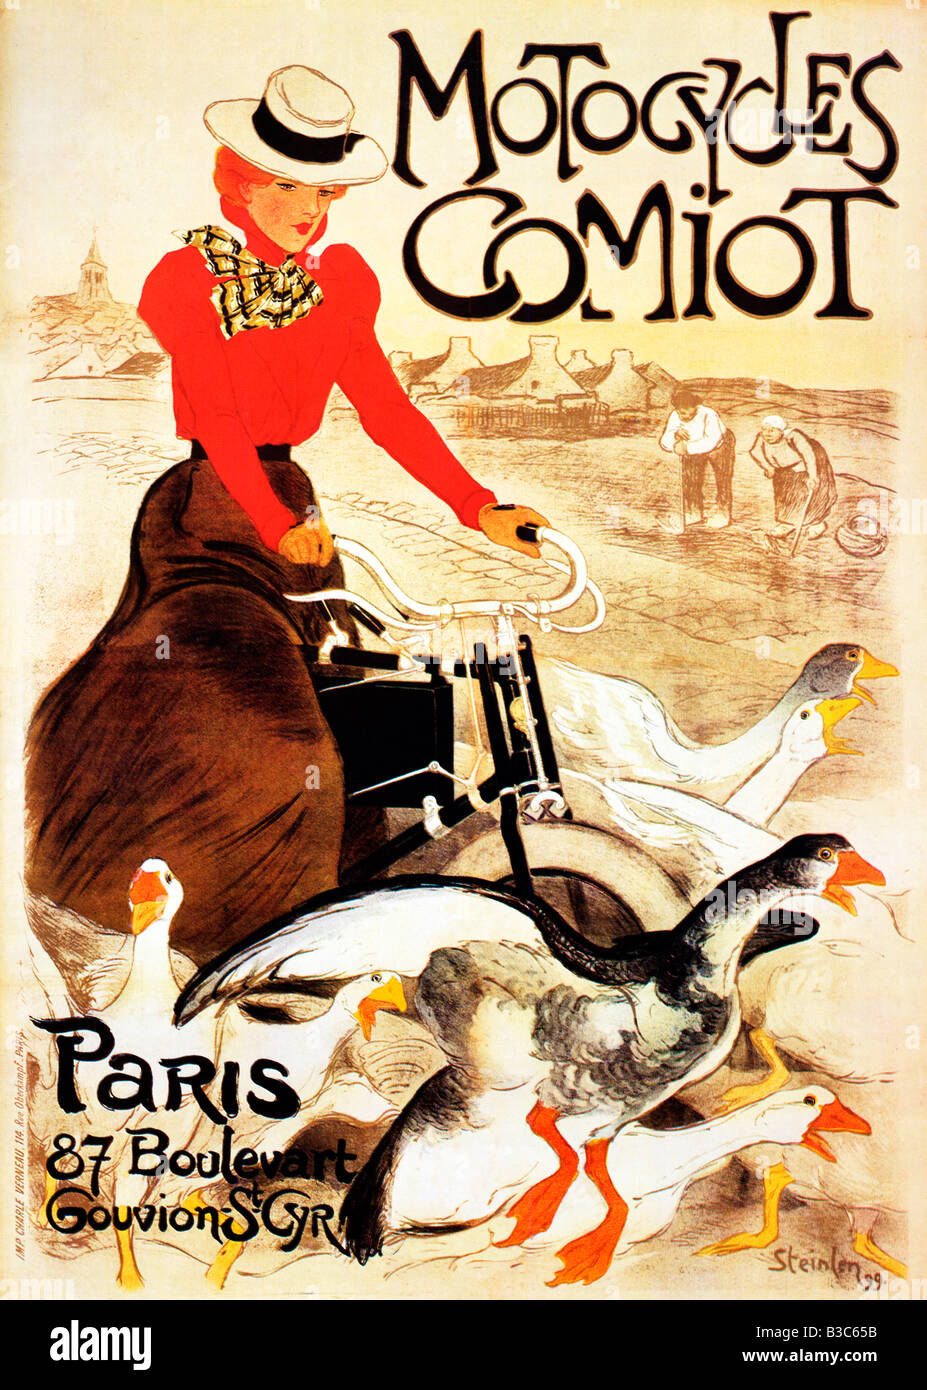 Steinlen Motorräder Comiot 1899 Jugendstil Poster von Theophile Steinlen für die französischen Motorrad-Streuung aufgeschreckt Gänse Stockfoto